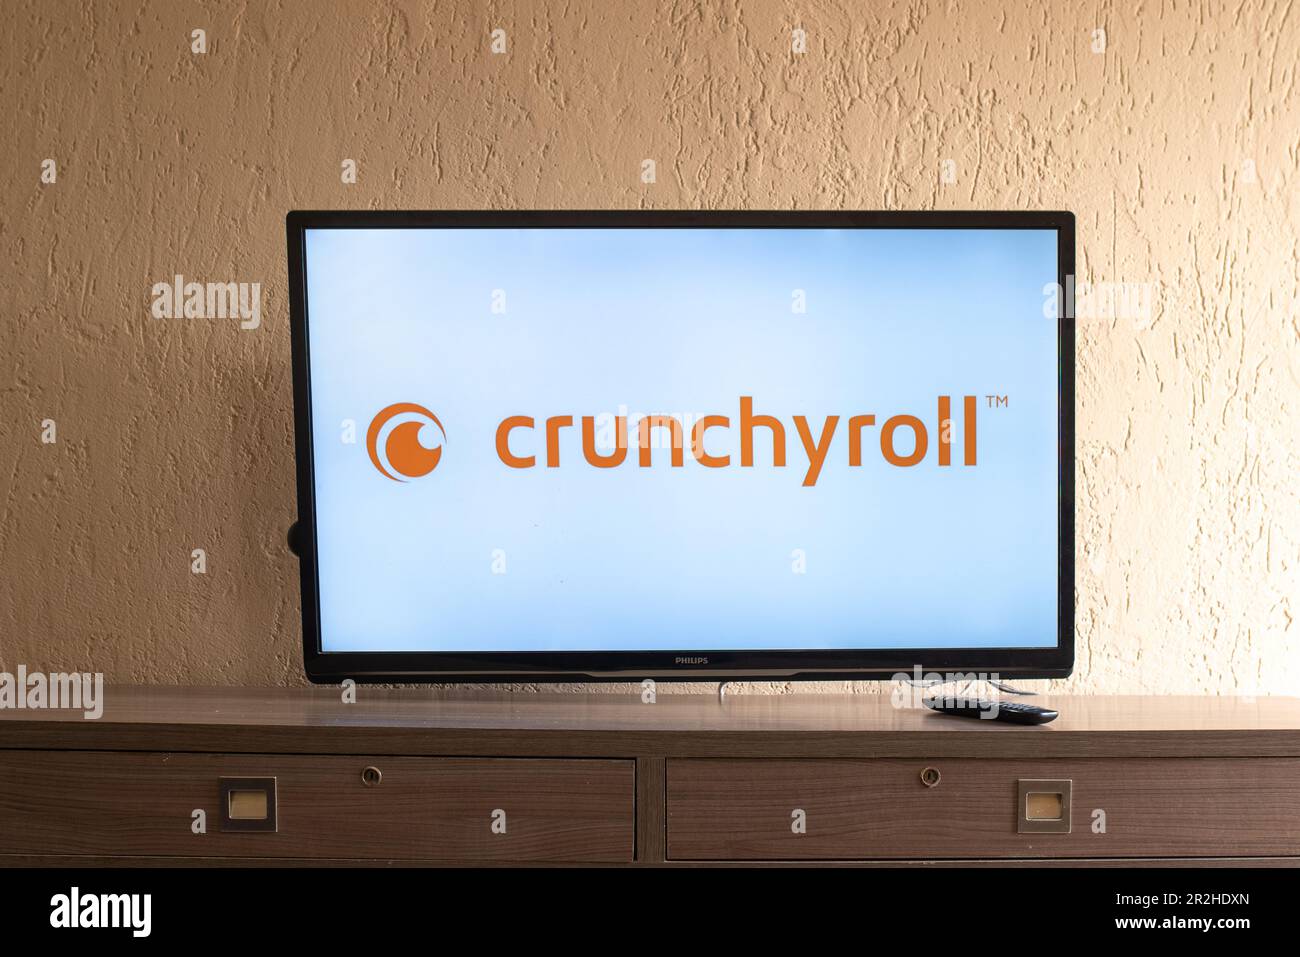 Crunchyroll immagini e fotografie stock ad alta risoluzione - Alamy